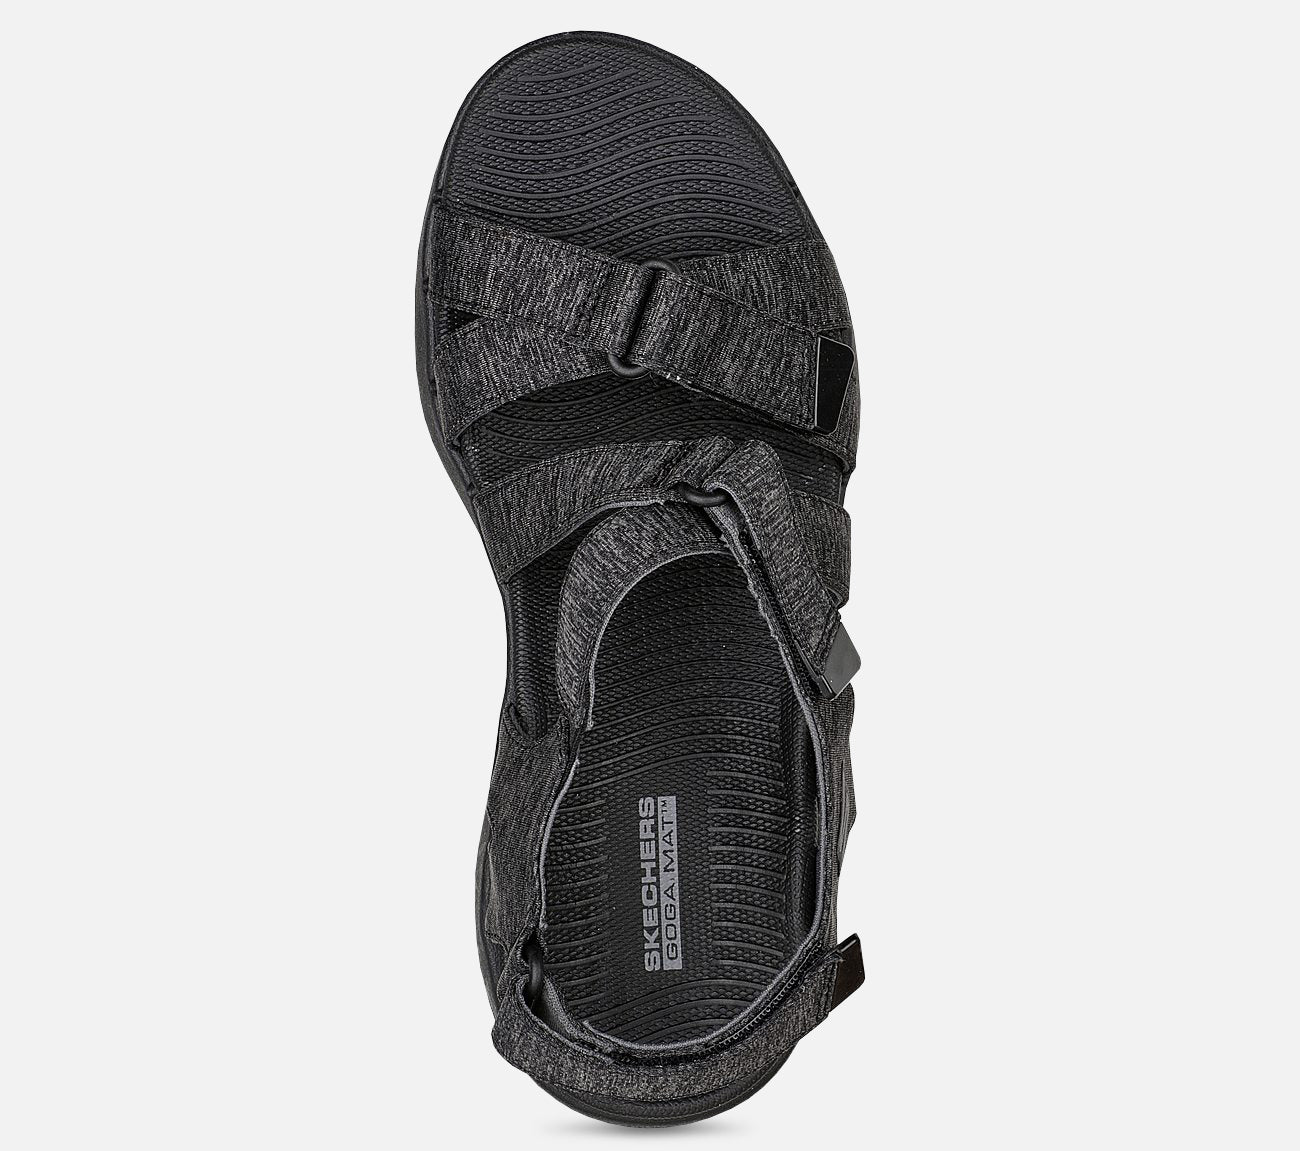 GO WALK 6 Sandal - Limitless Sandal Skechers